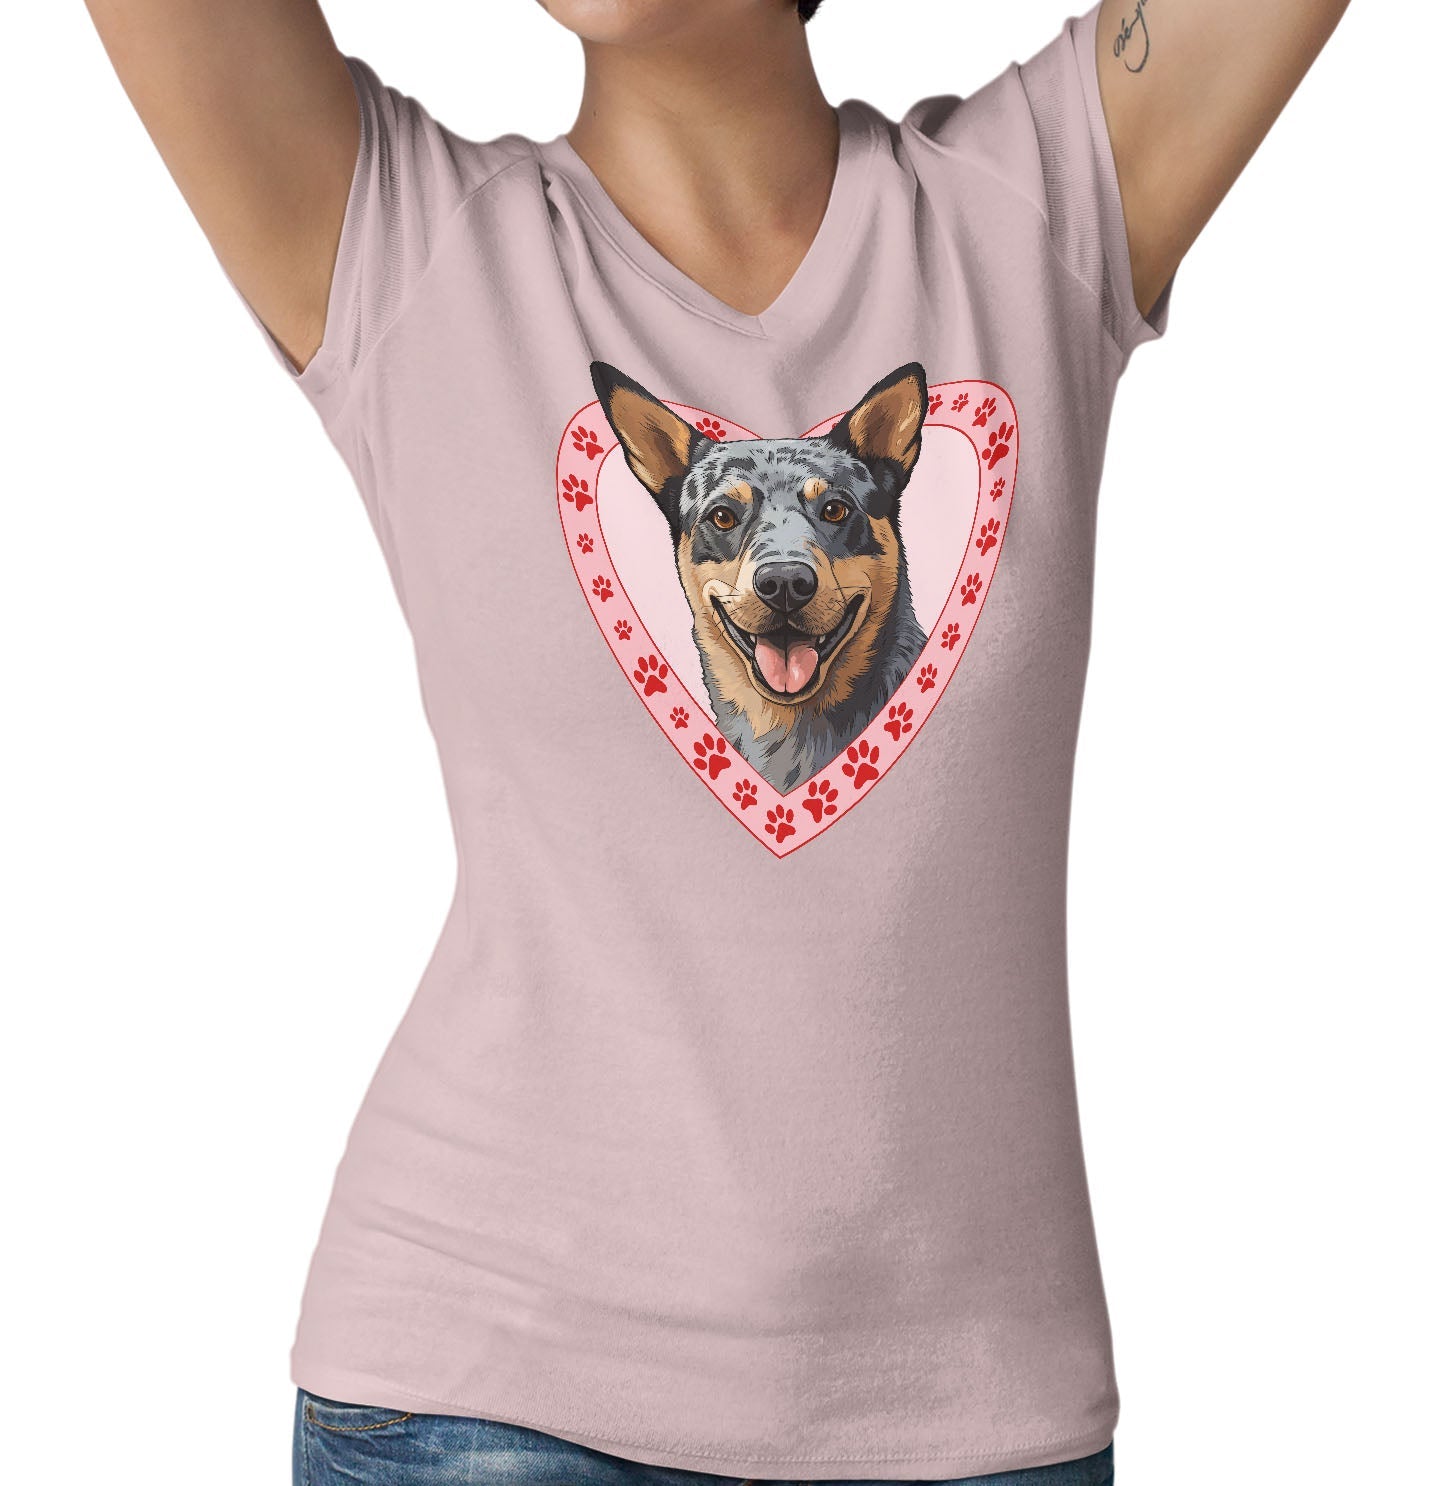 Australian Cattle Dog Illustration In Heart - Women's V-Neck T-Shirt